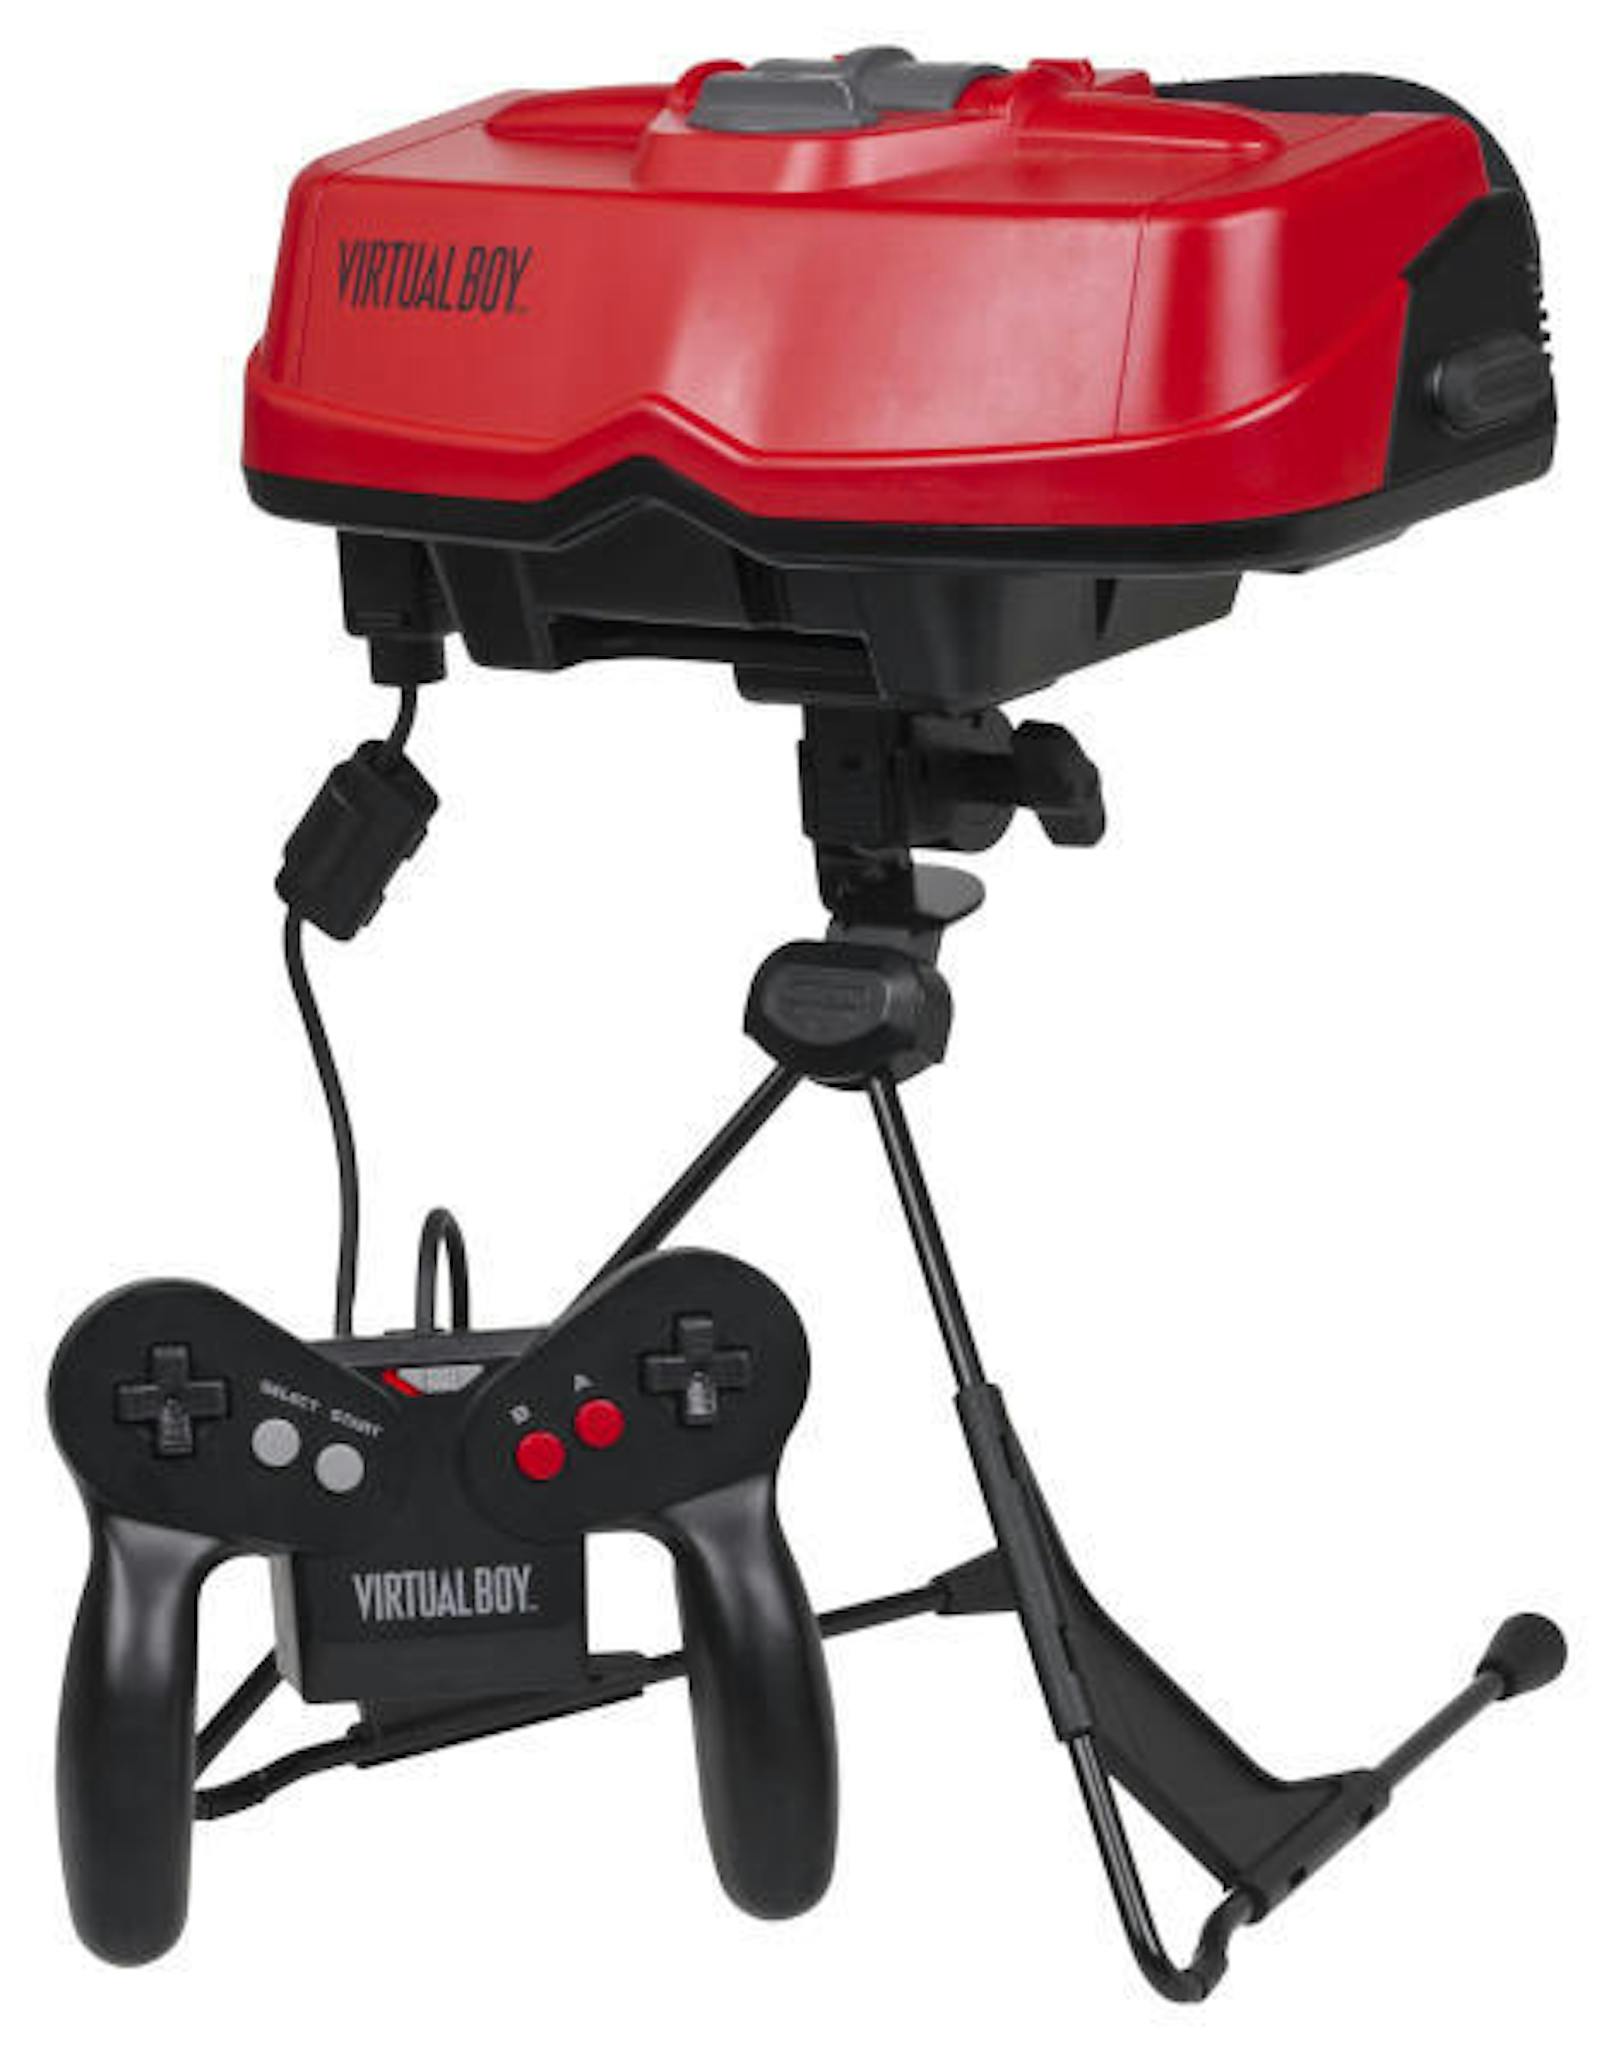 Tischständer mit Kontroller: So sah VR 1995 aus - in Form des Virtual Boys von Nintendo.